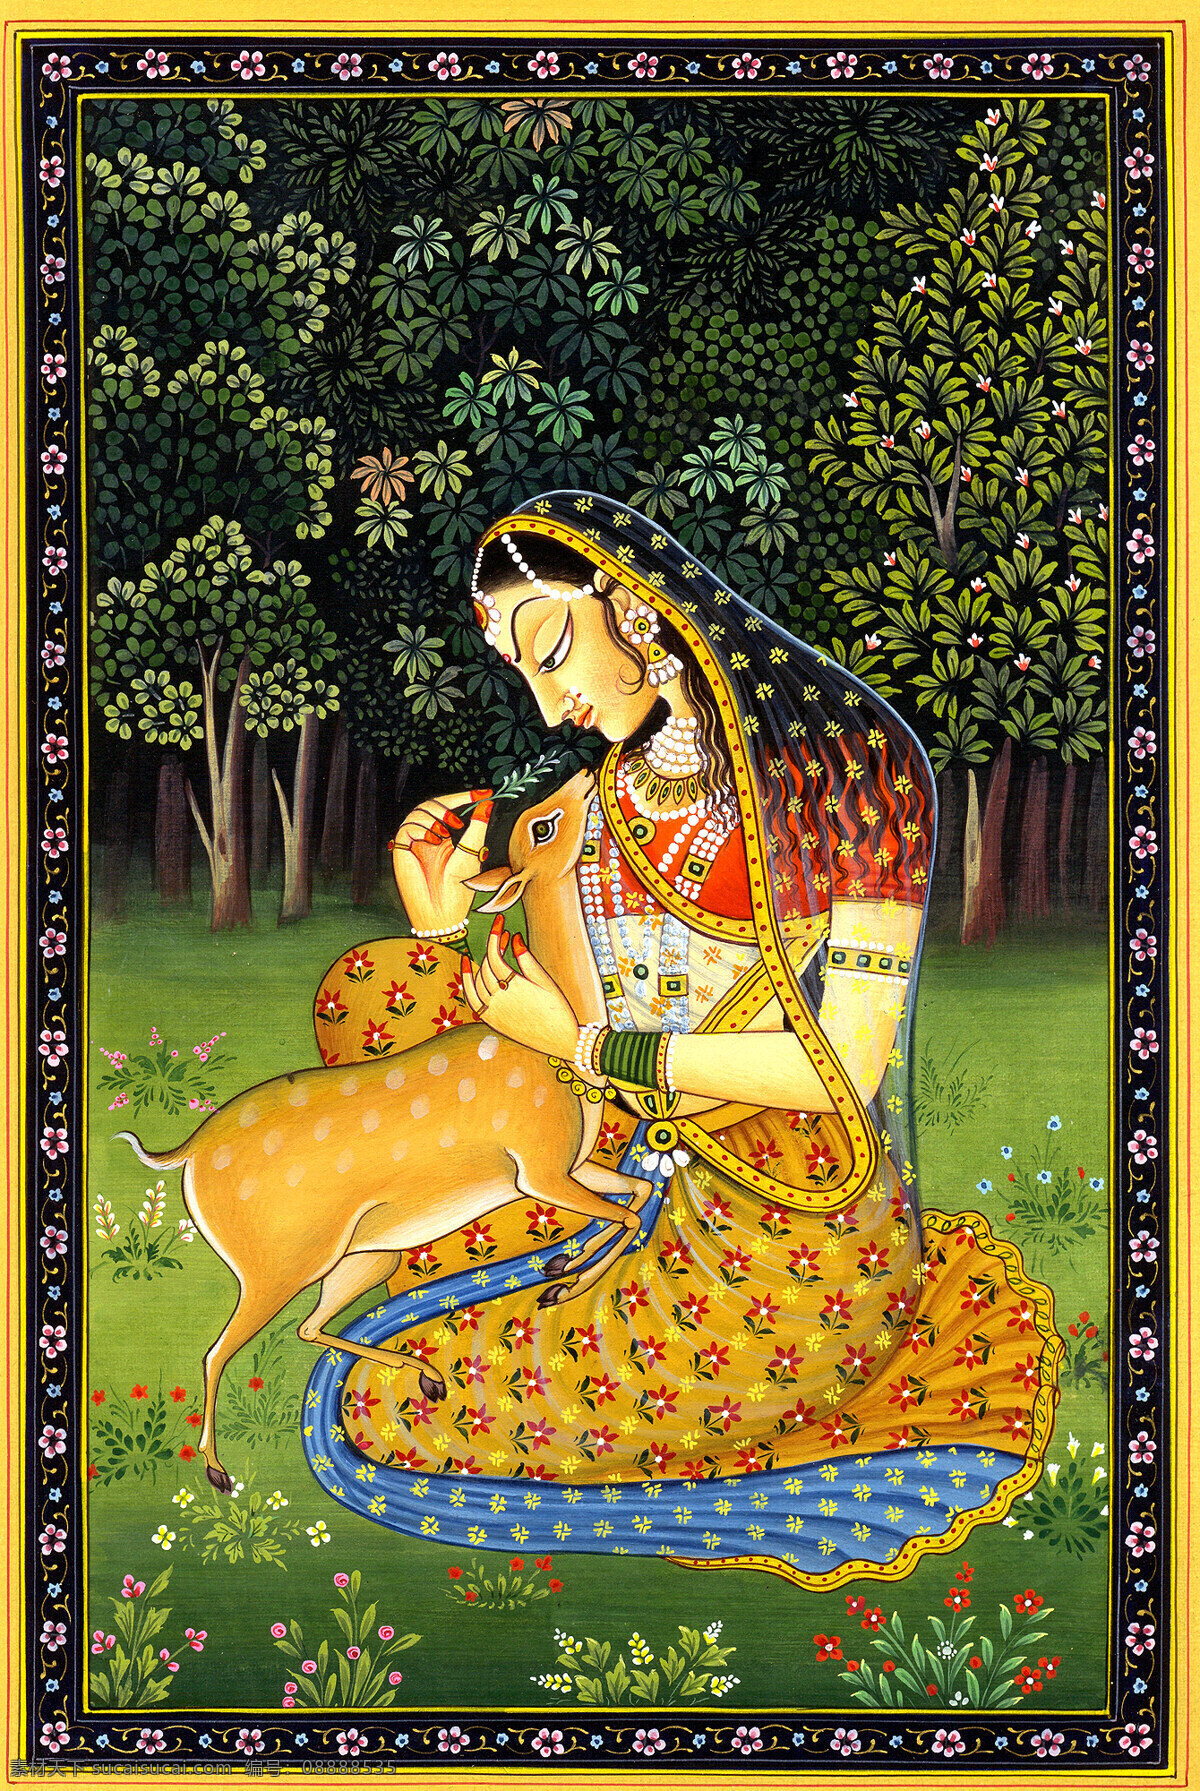 印度人物 人物 一名印度女性 一只小鹿 女性 小鹿 森林 文化艺术 传统文化